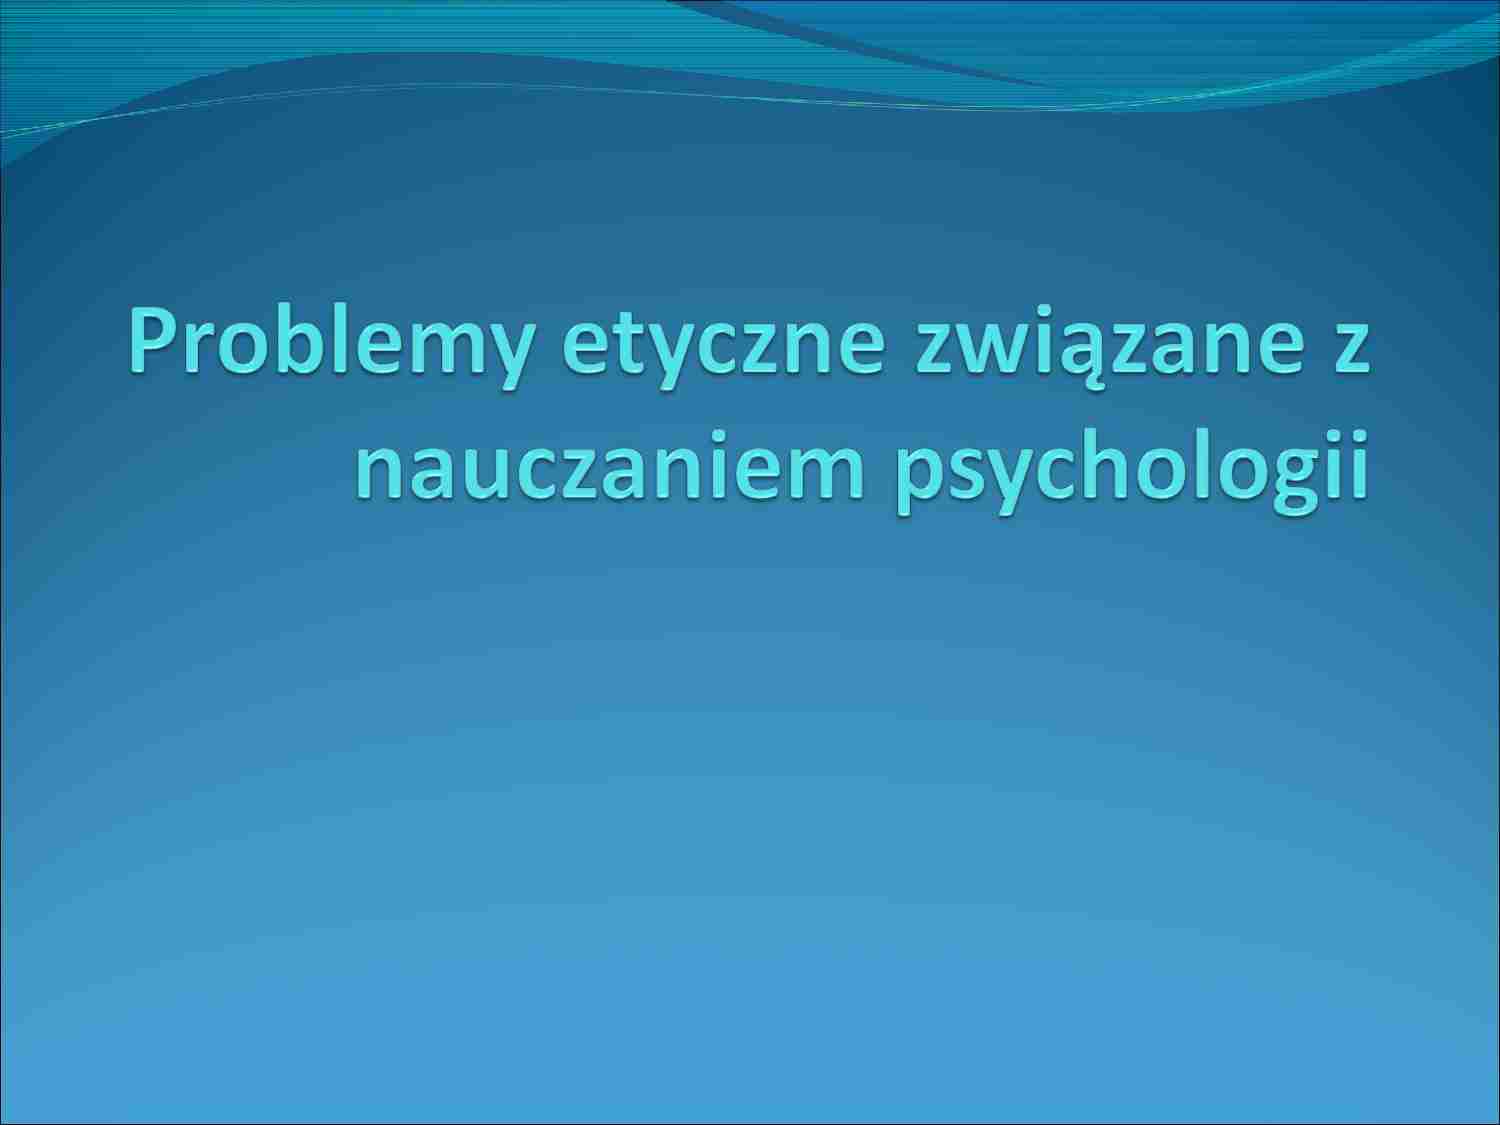 Problemy etyczne w nauczaniu psychologii - prezentacja - strona 1